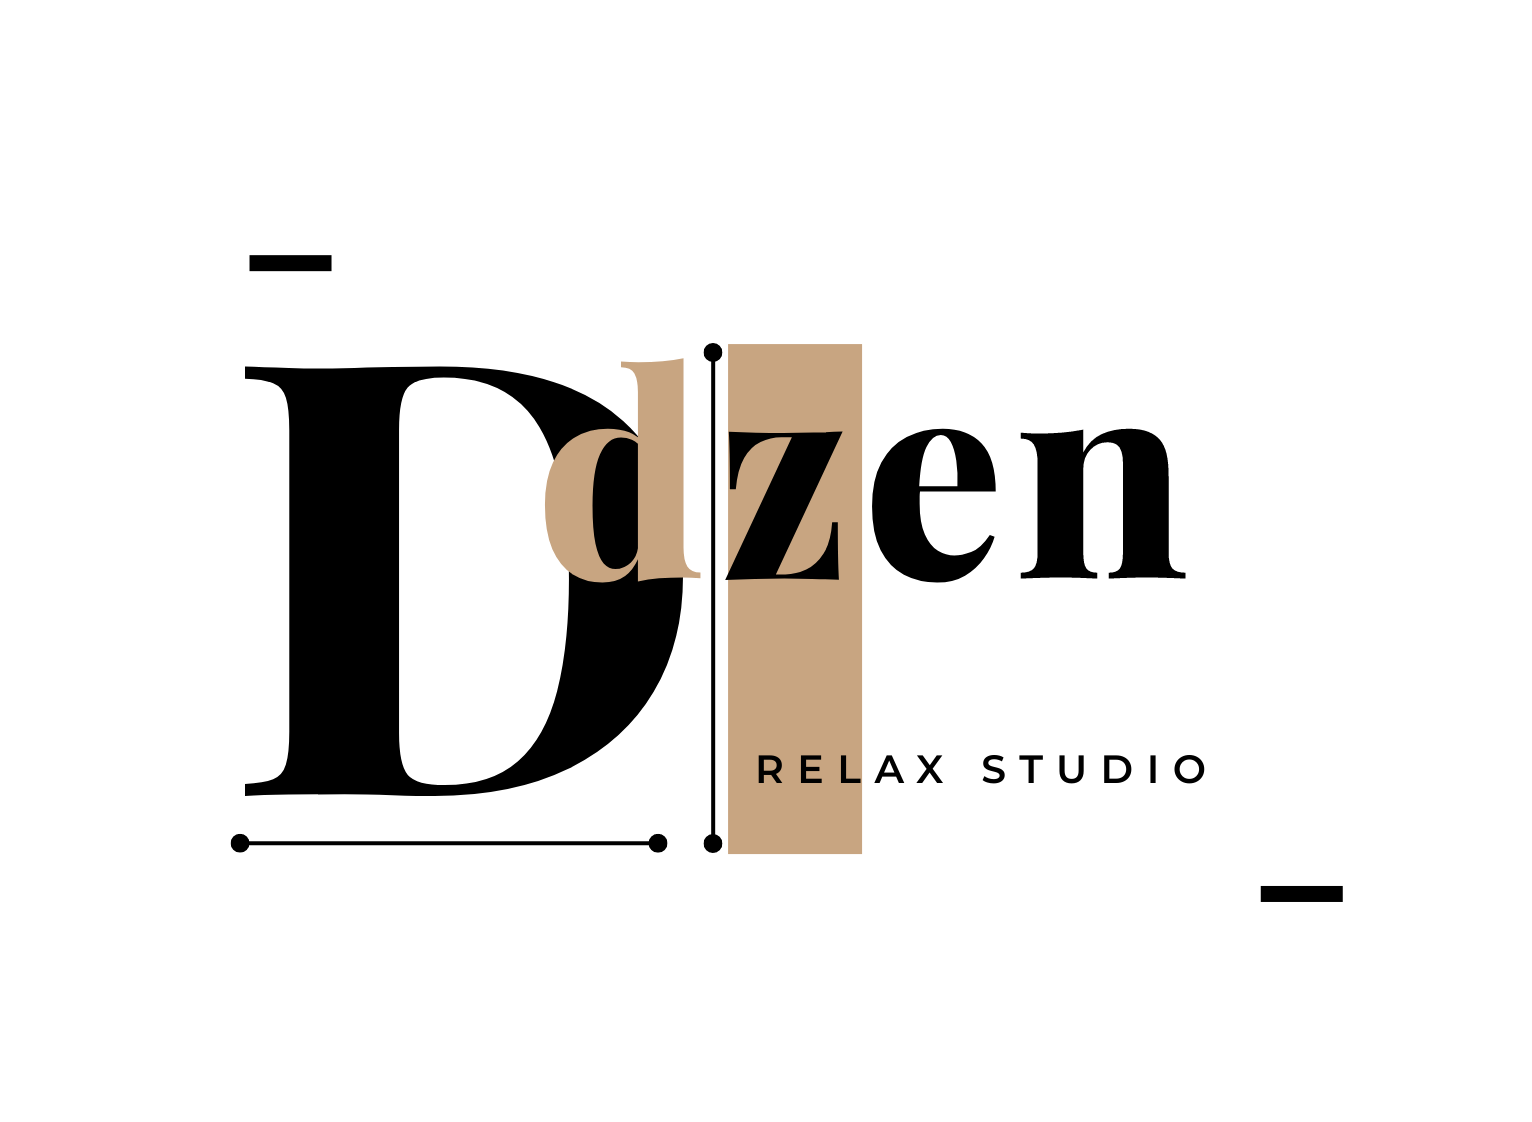 DZEN RELAX STUDIO